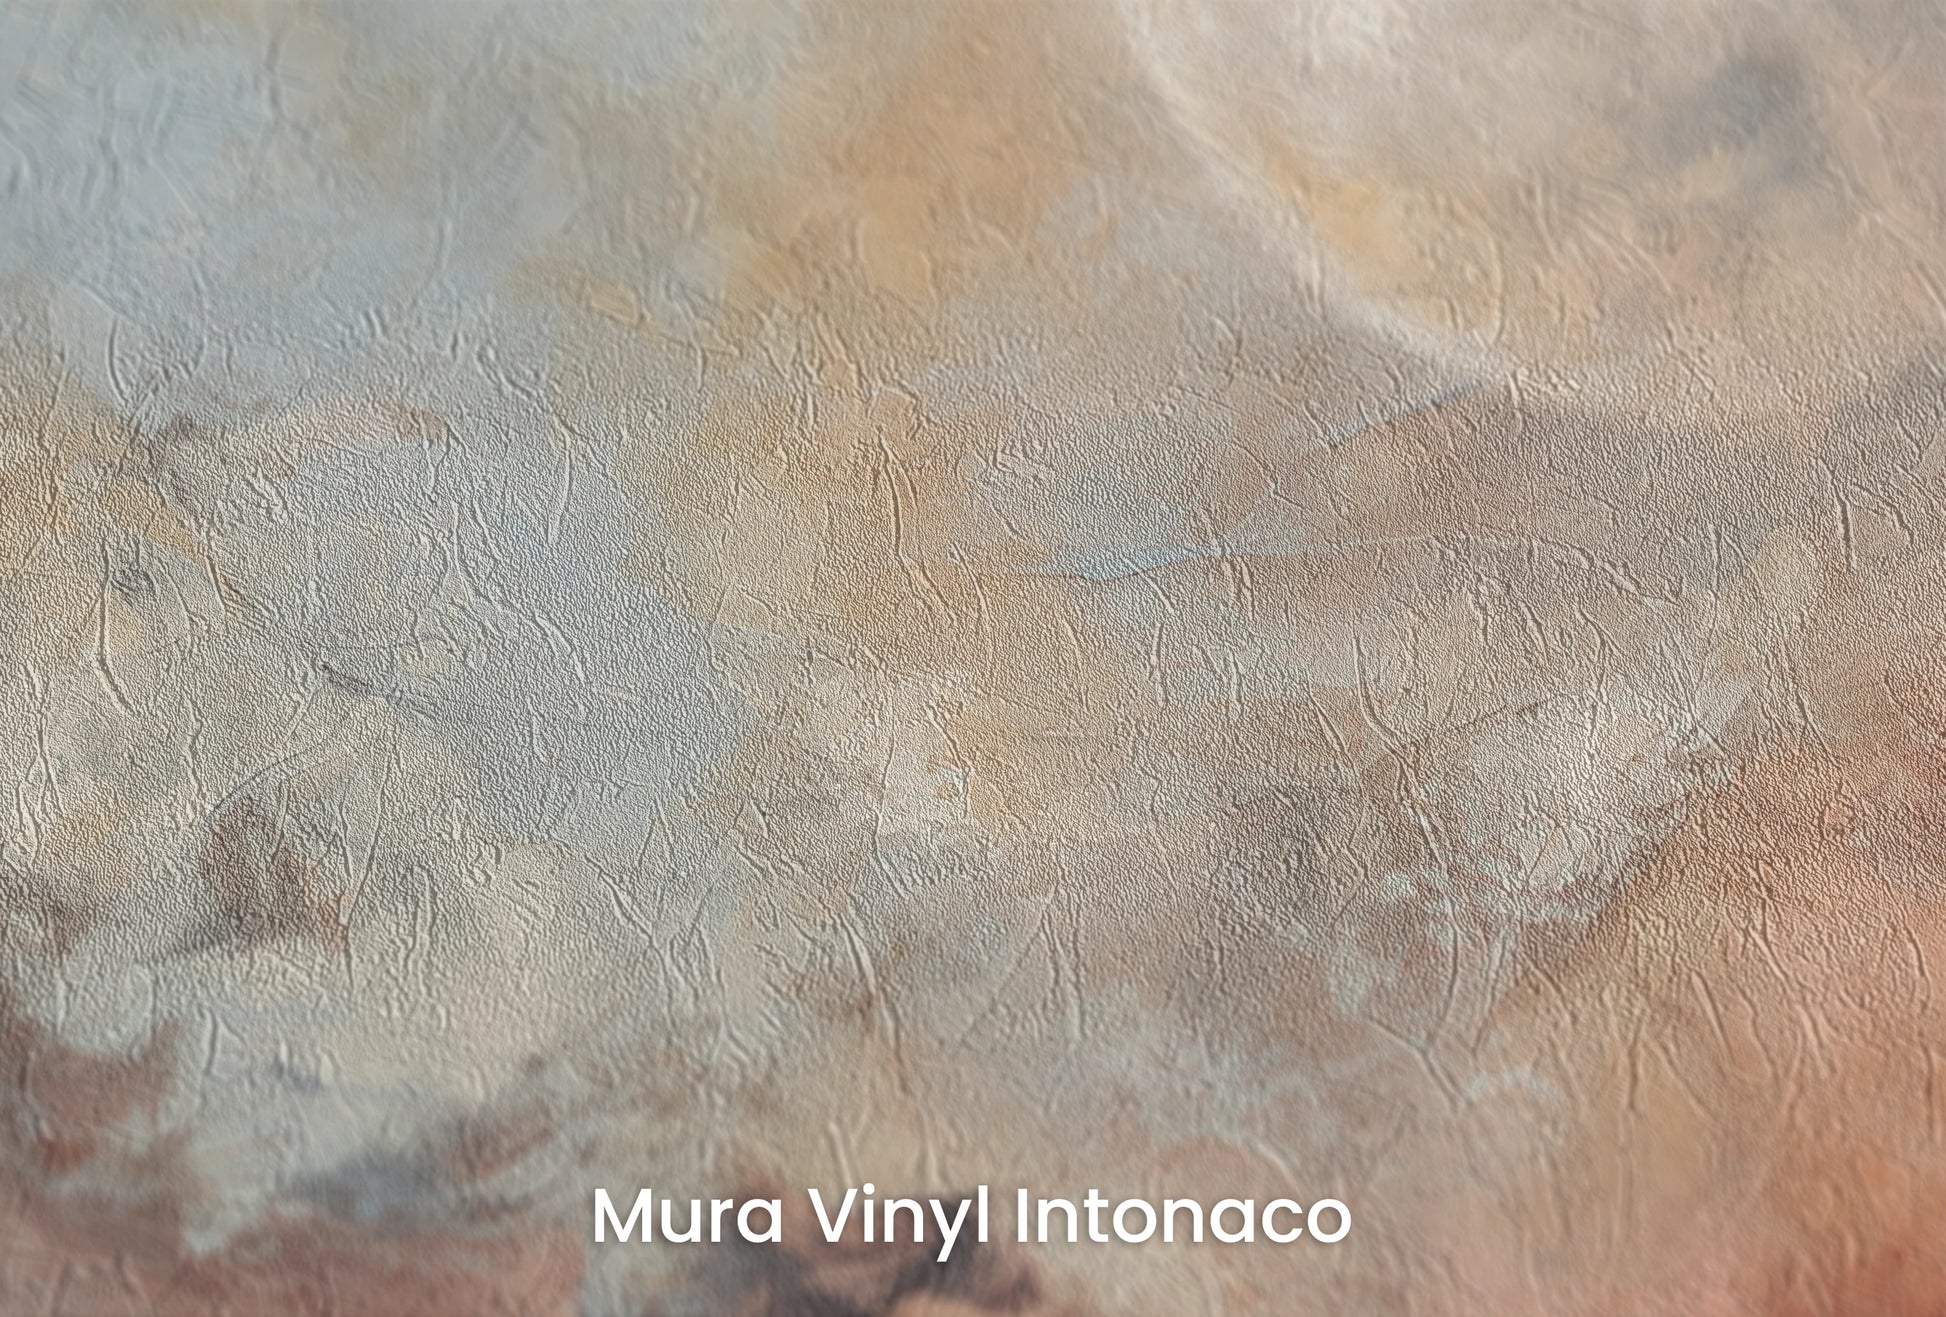 Zbliżenie na artystyczną fototapetę o nazwie Moon's Monochrome na podłożu Mura Vinyl Intonaco - struktura tartego tynku.